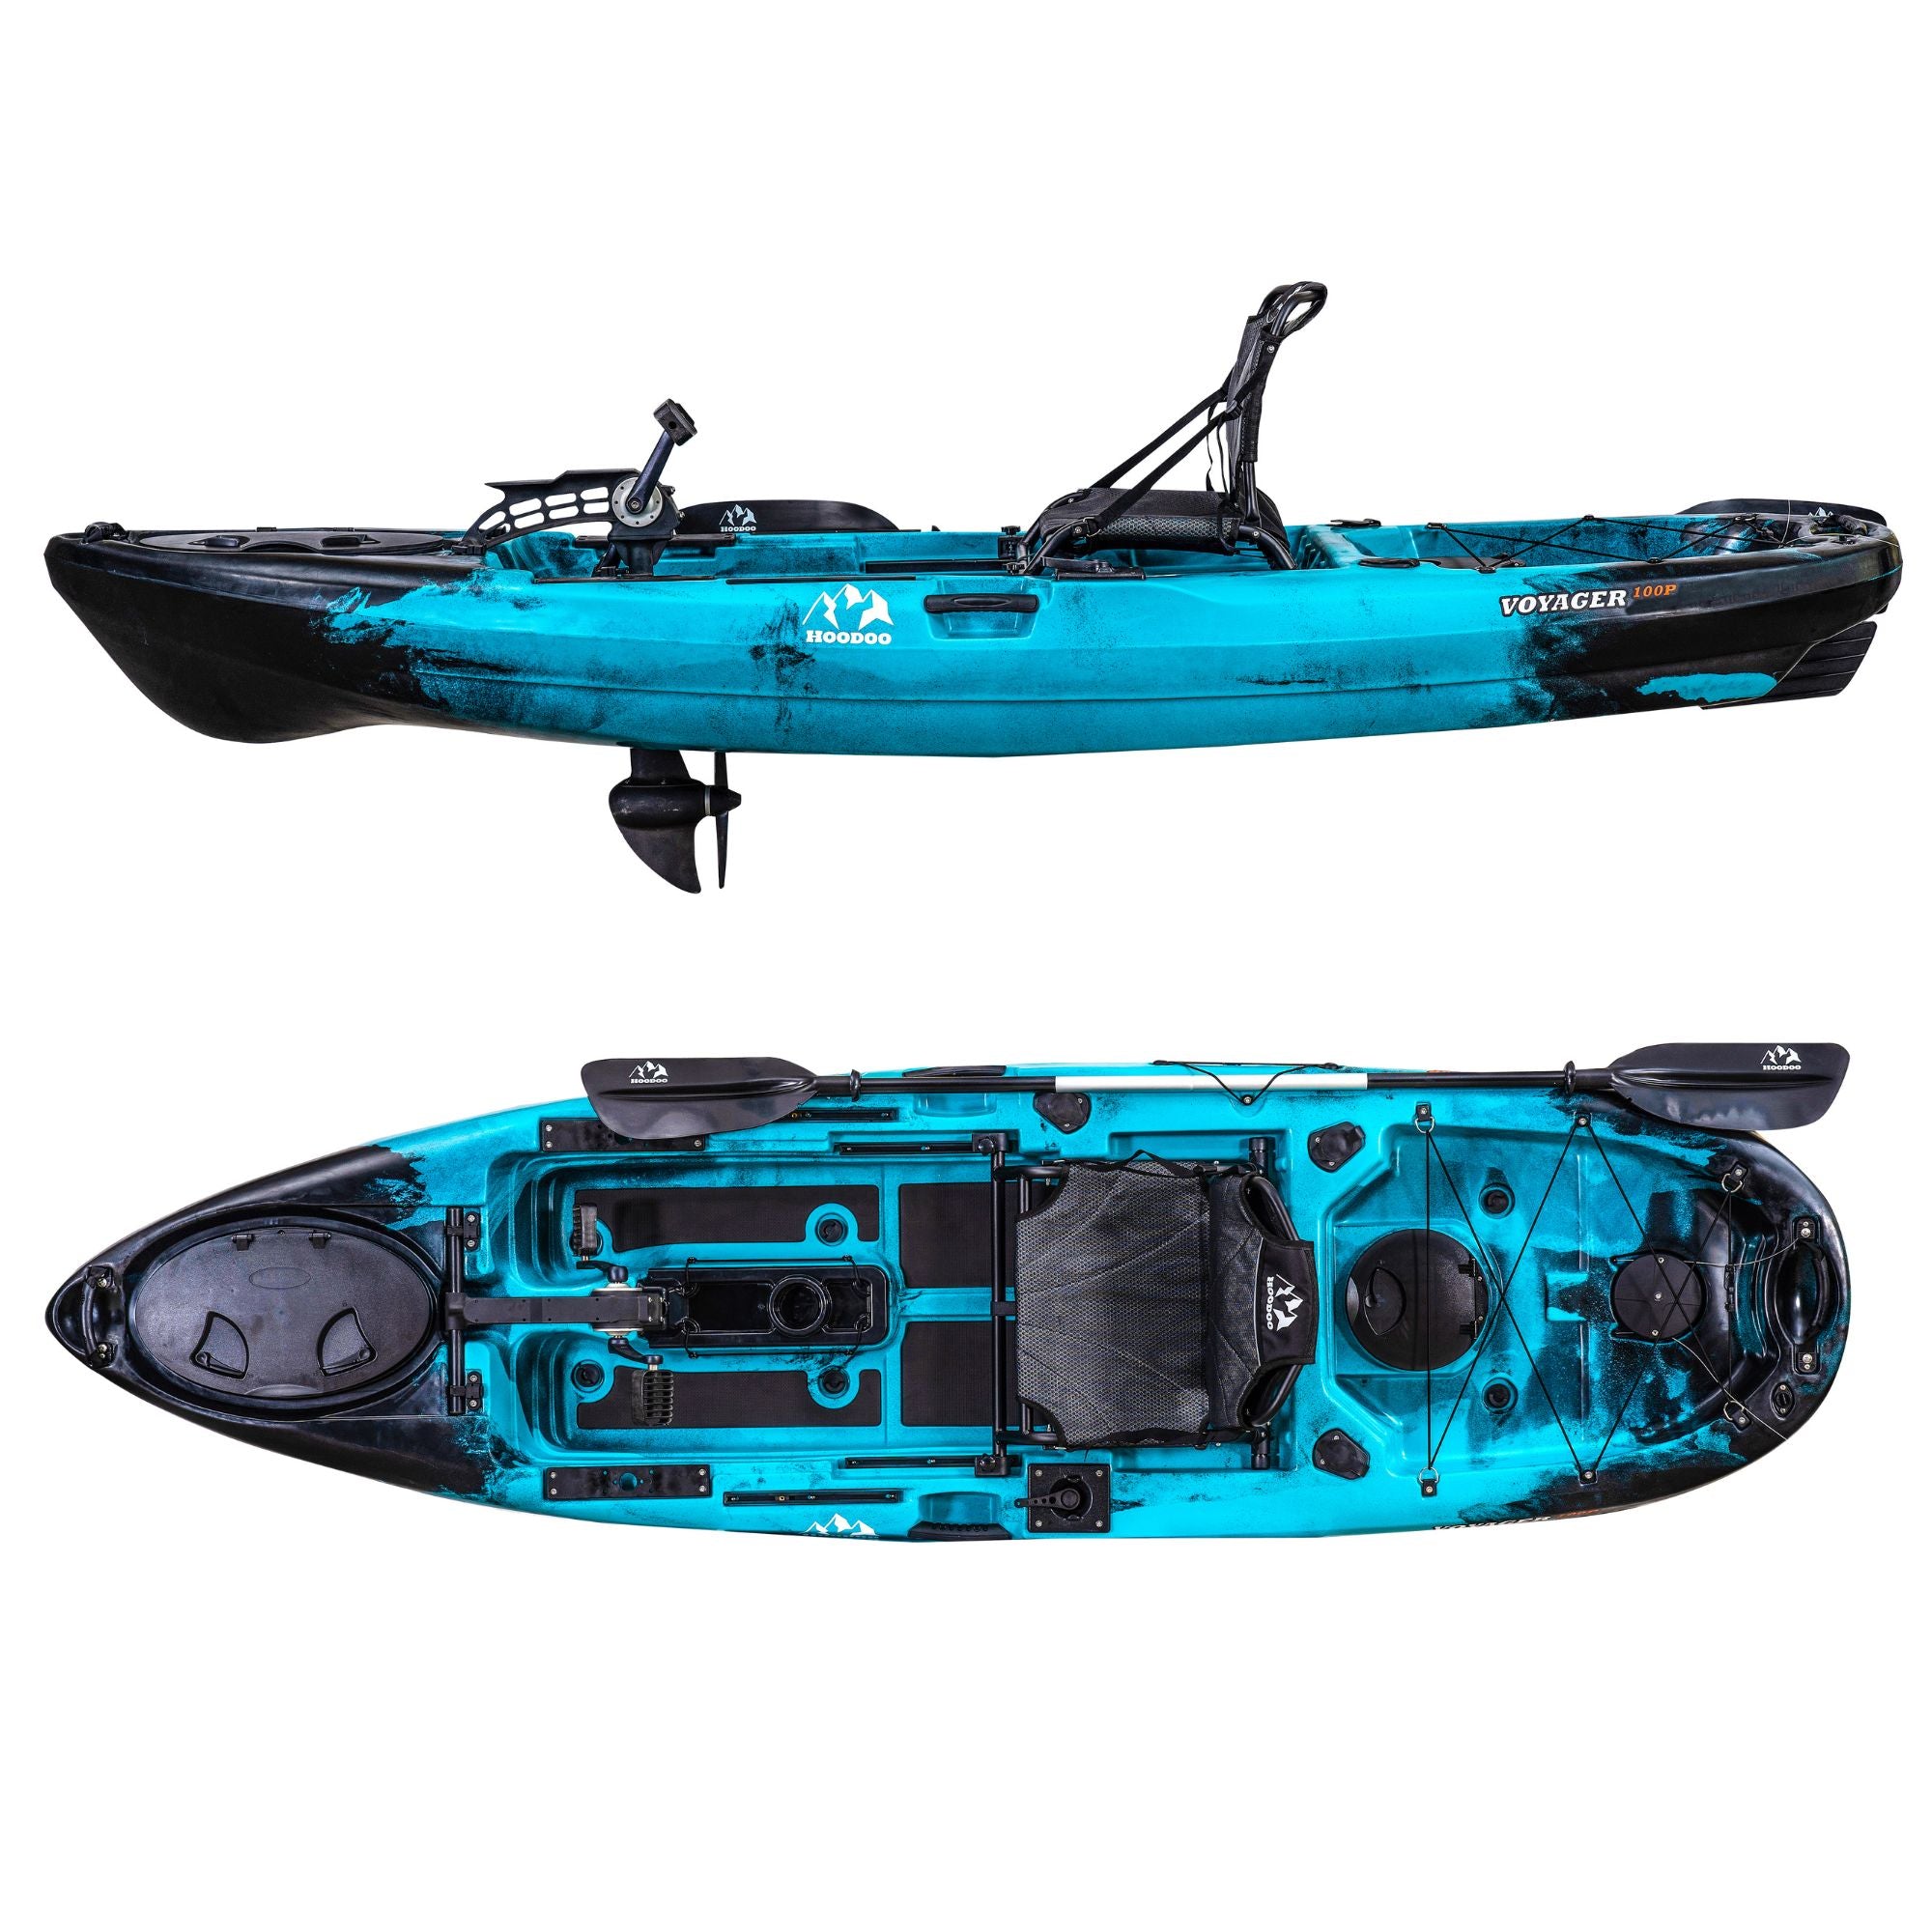 Pedal-powered kayak offers serious fishing platform